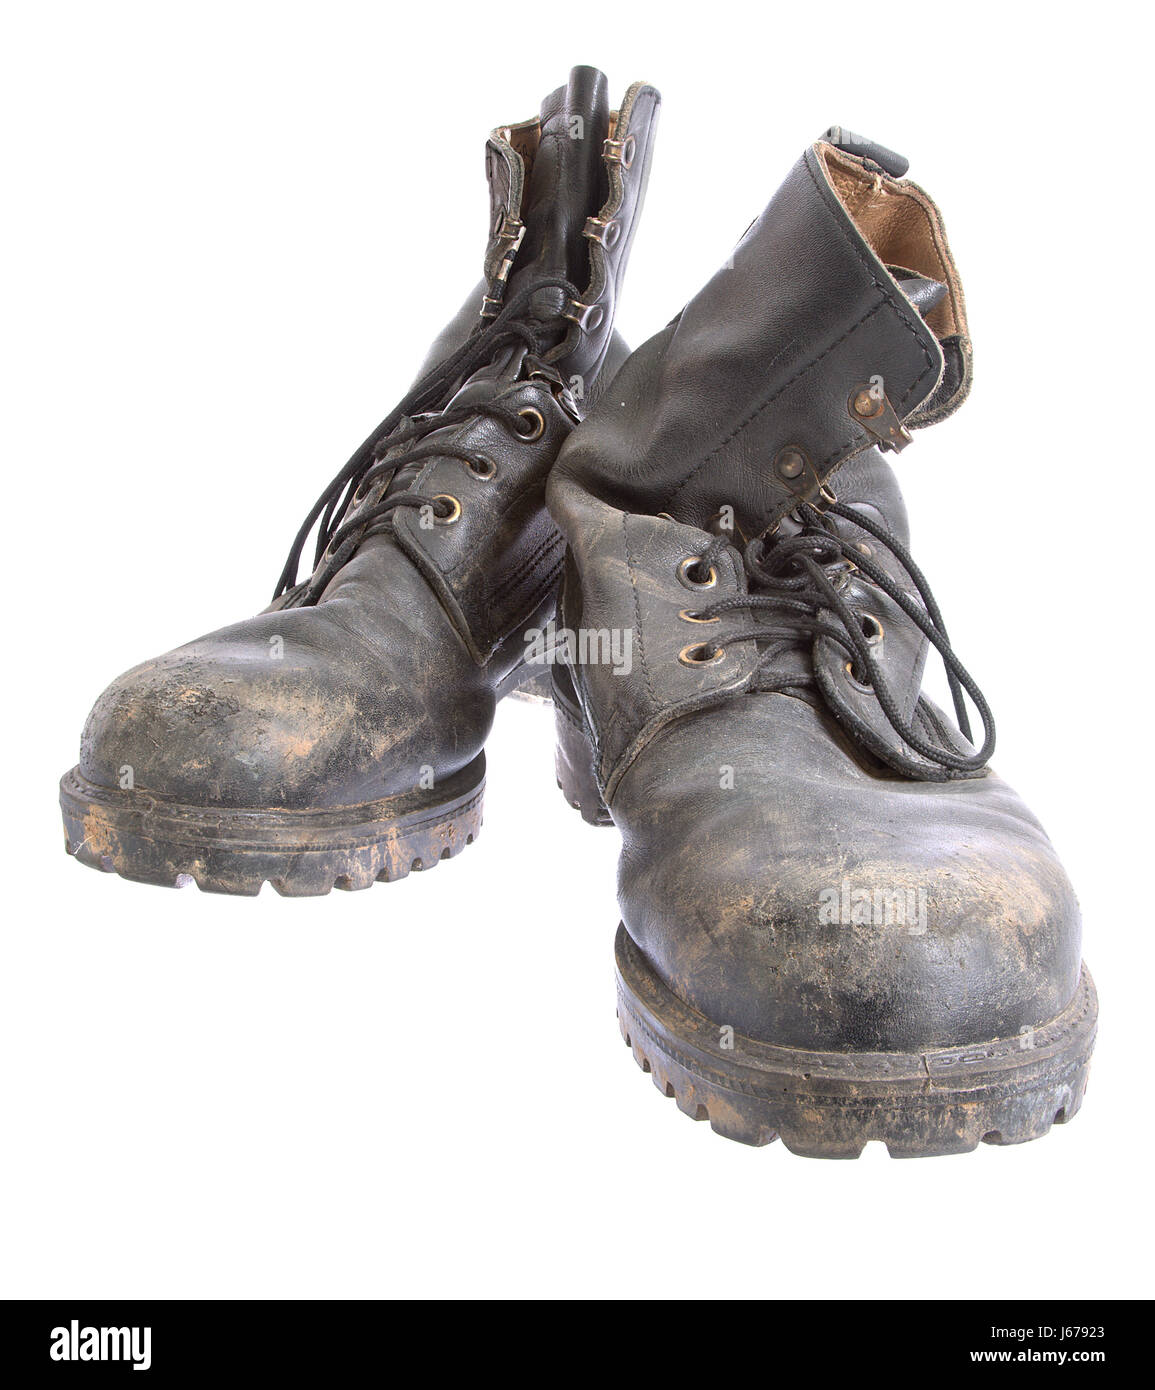 dirt cheap boots